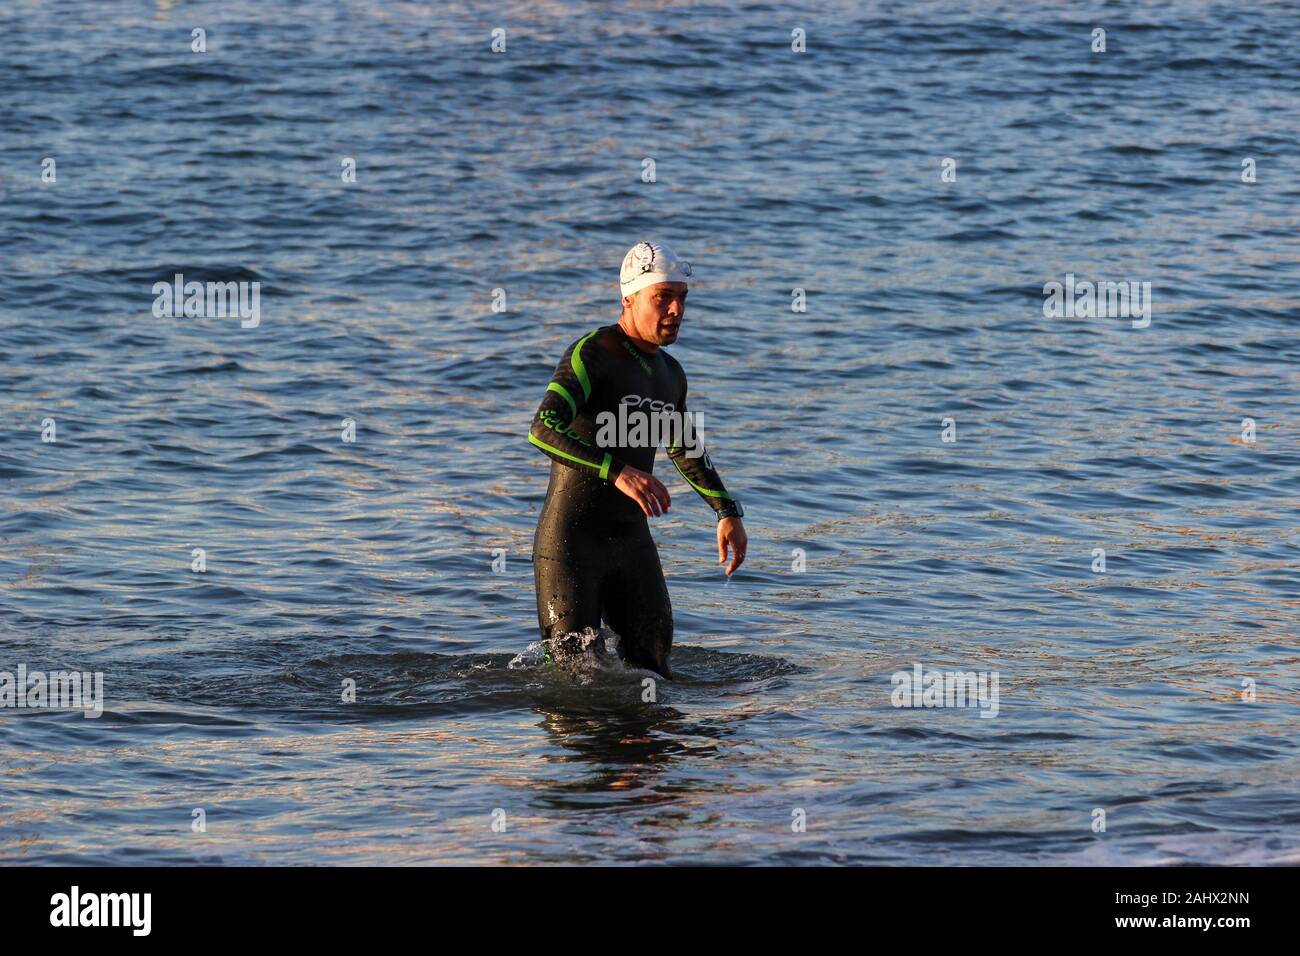 Nuotatore muta in uscita di acqua nel Parco acquatico Laguna in San Francisco, Stati Uniti Foto Stock